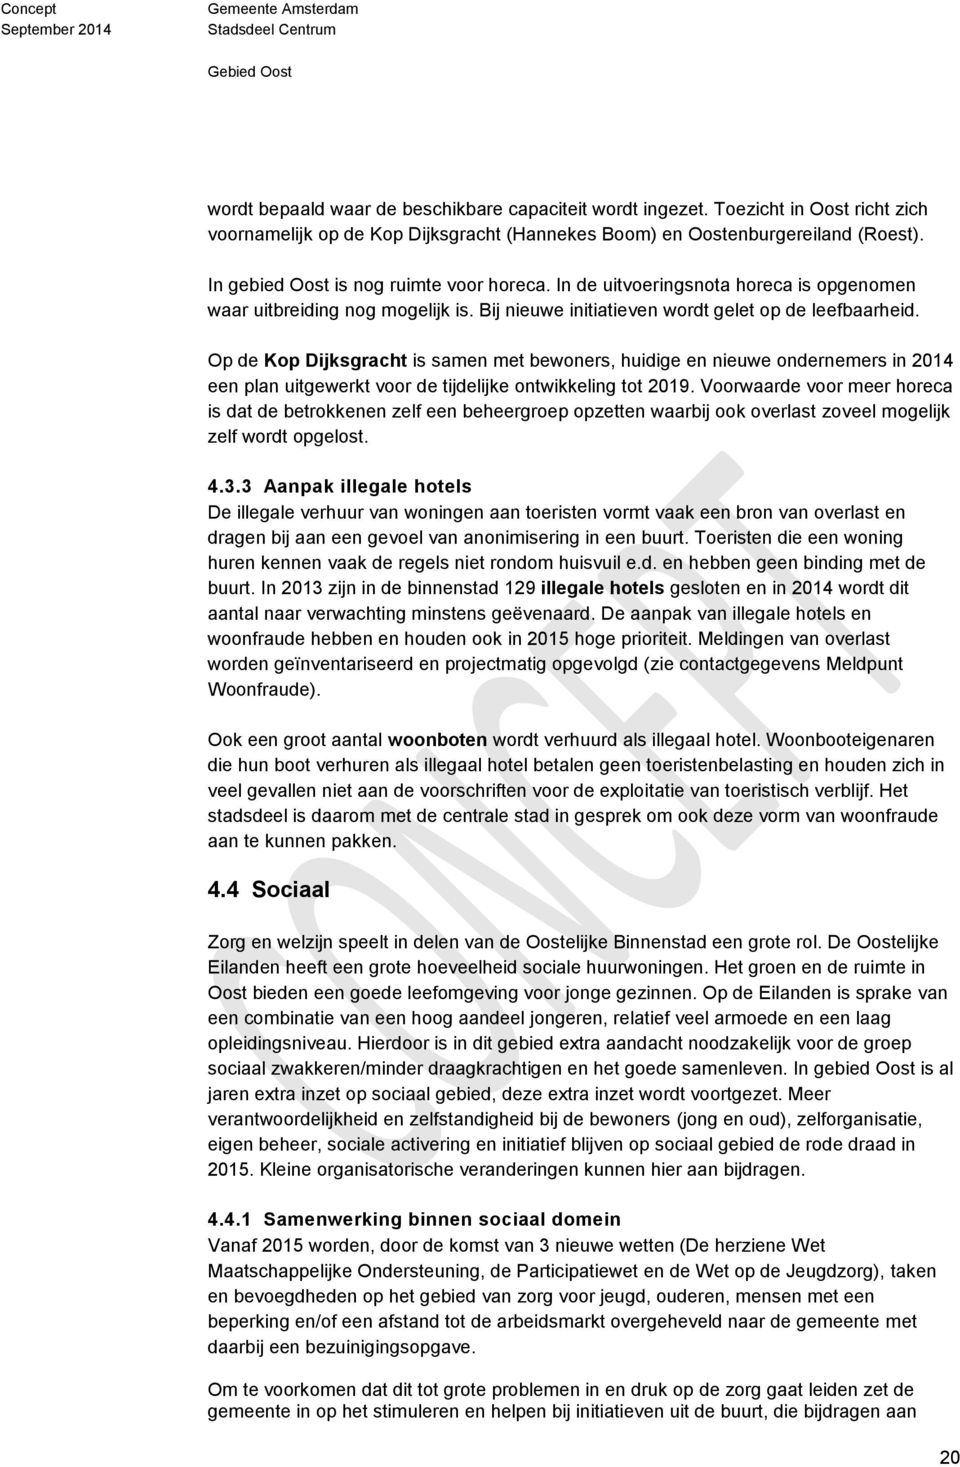 Op de Kop Dijksgracht is samen met bewoners, huidige en nieuwe ondernemers in 2014 een plan uitgewerkt voor de tijdelijke ontwikkeling tot 2019.